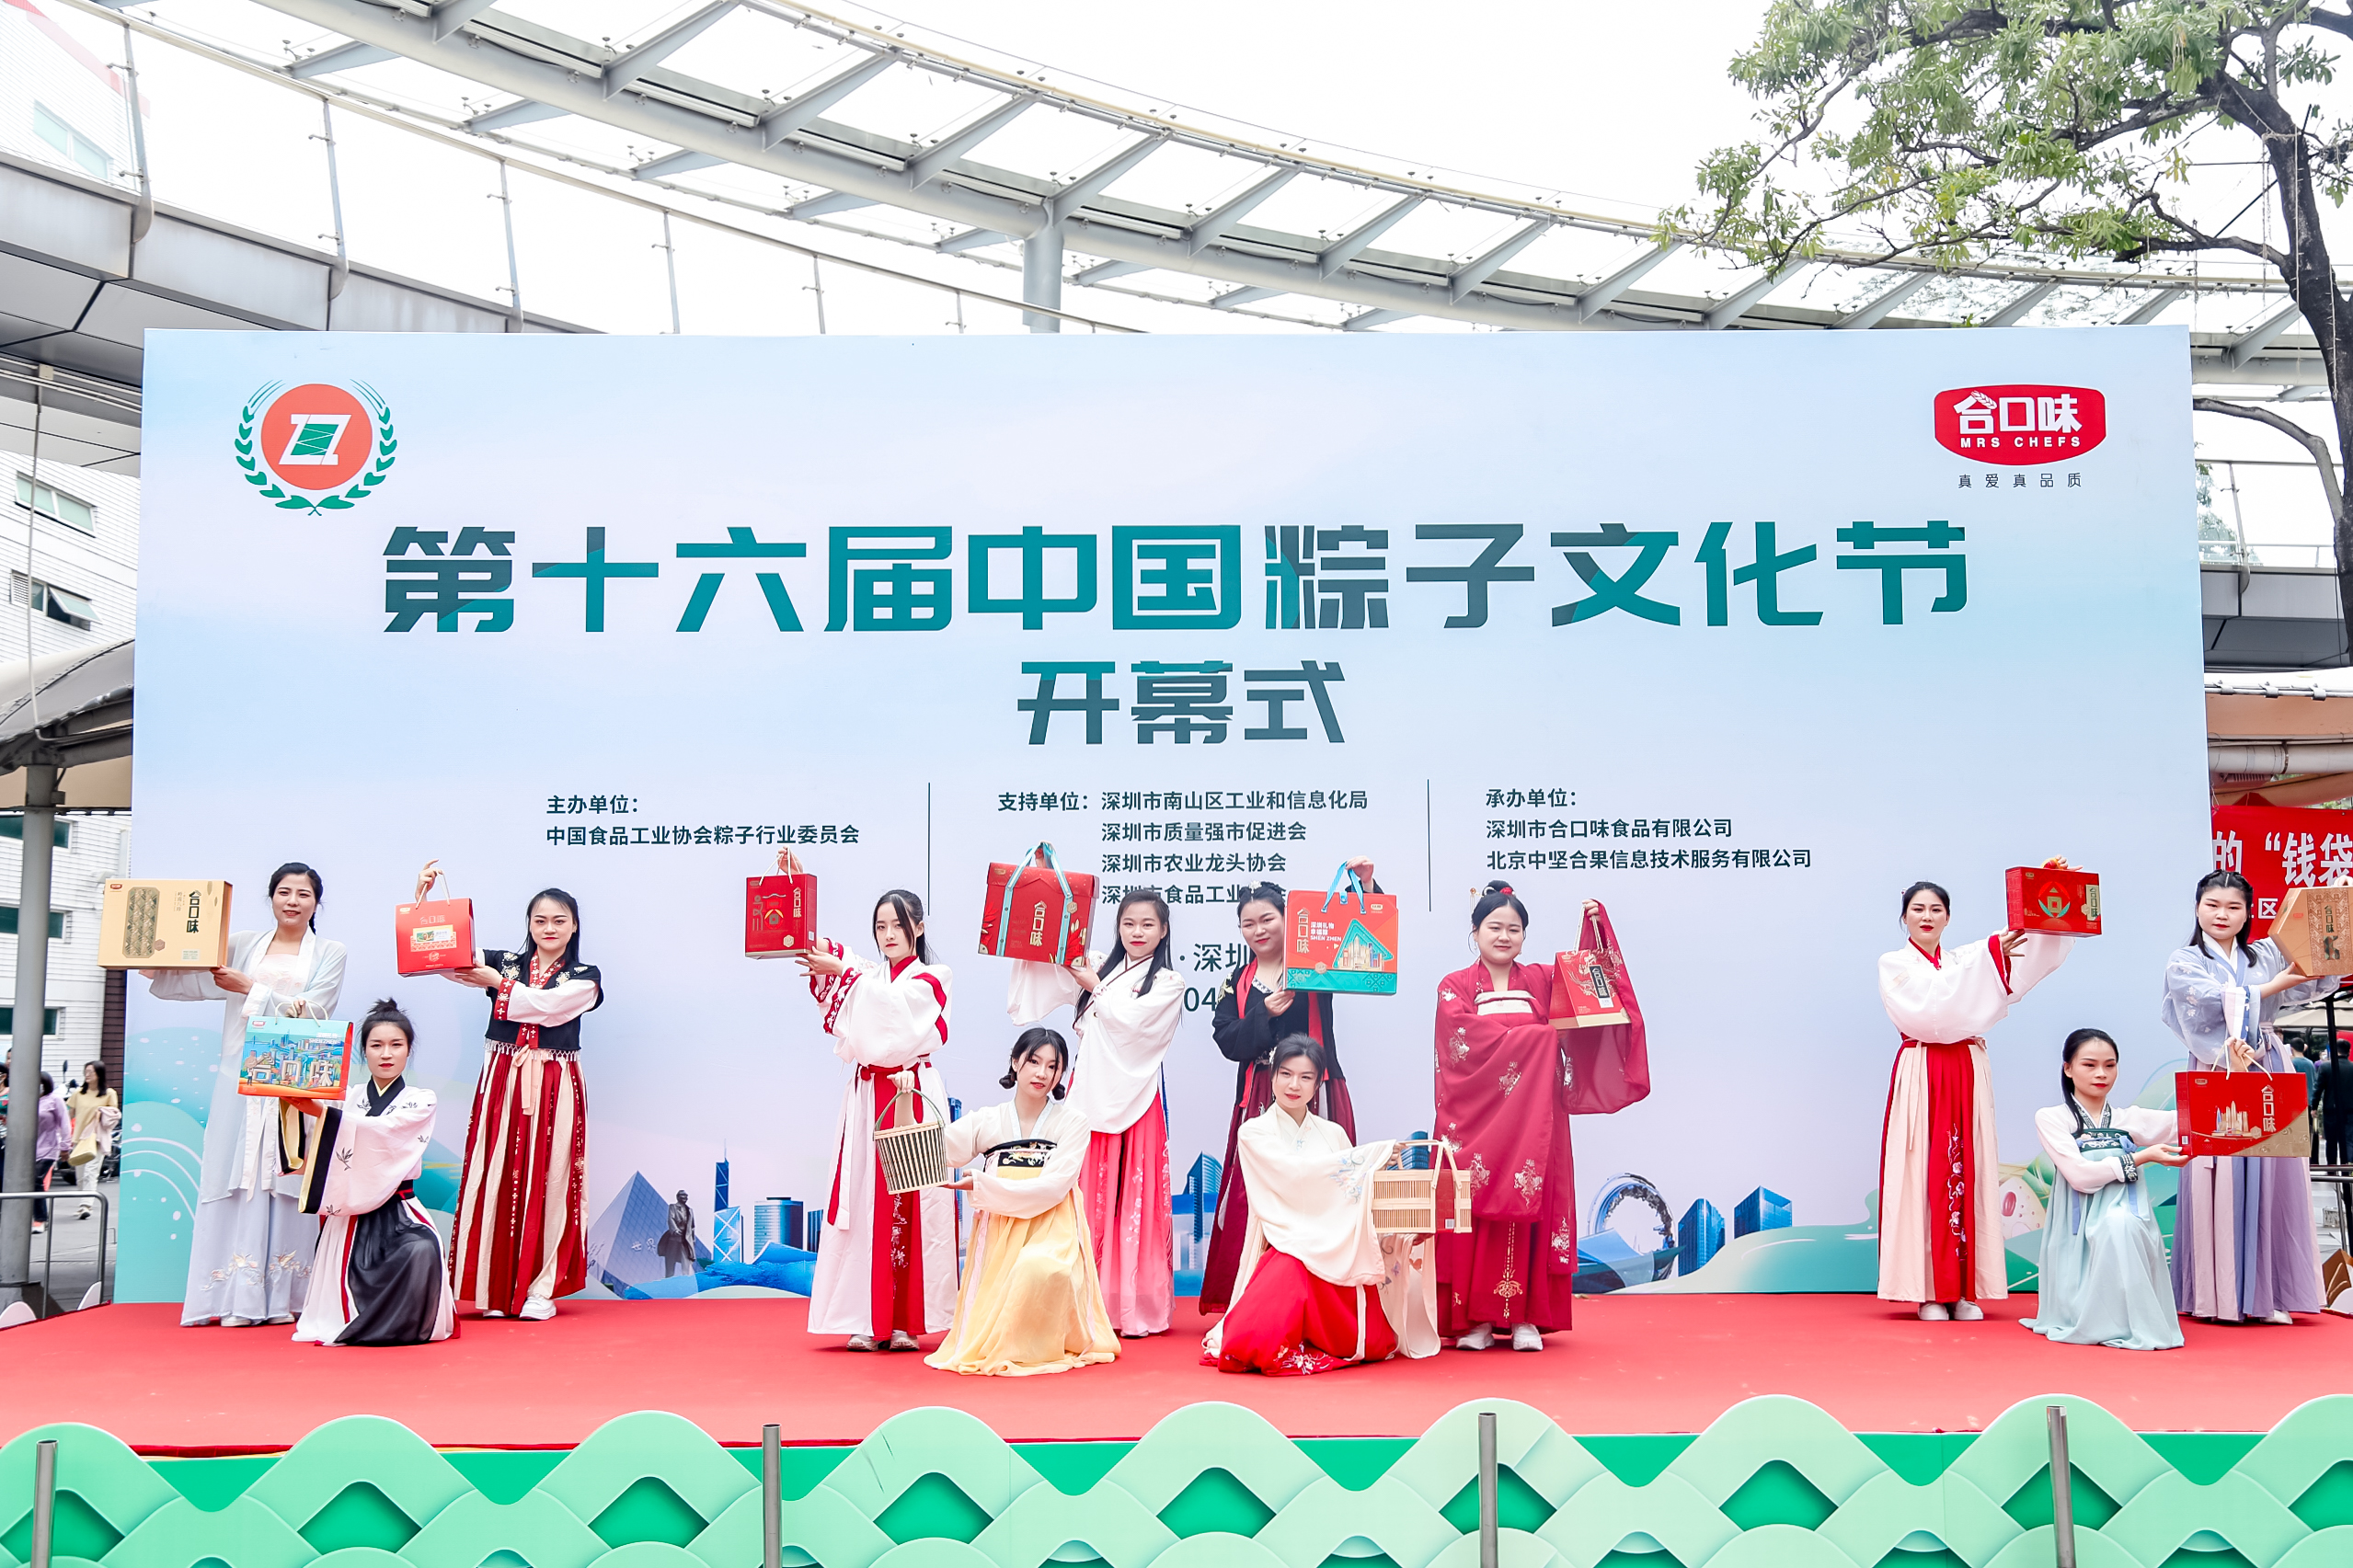 合口味集团承办第十六届中国粽子文化节